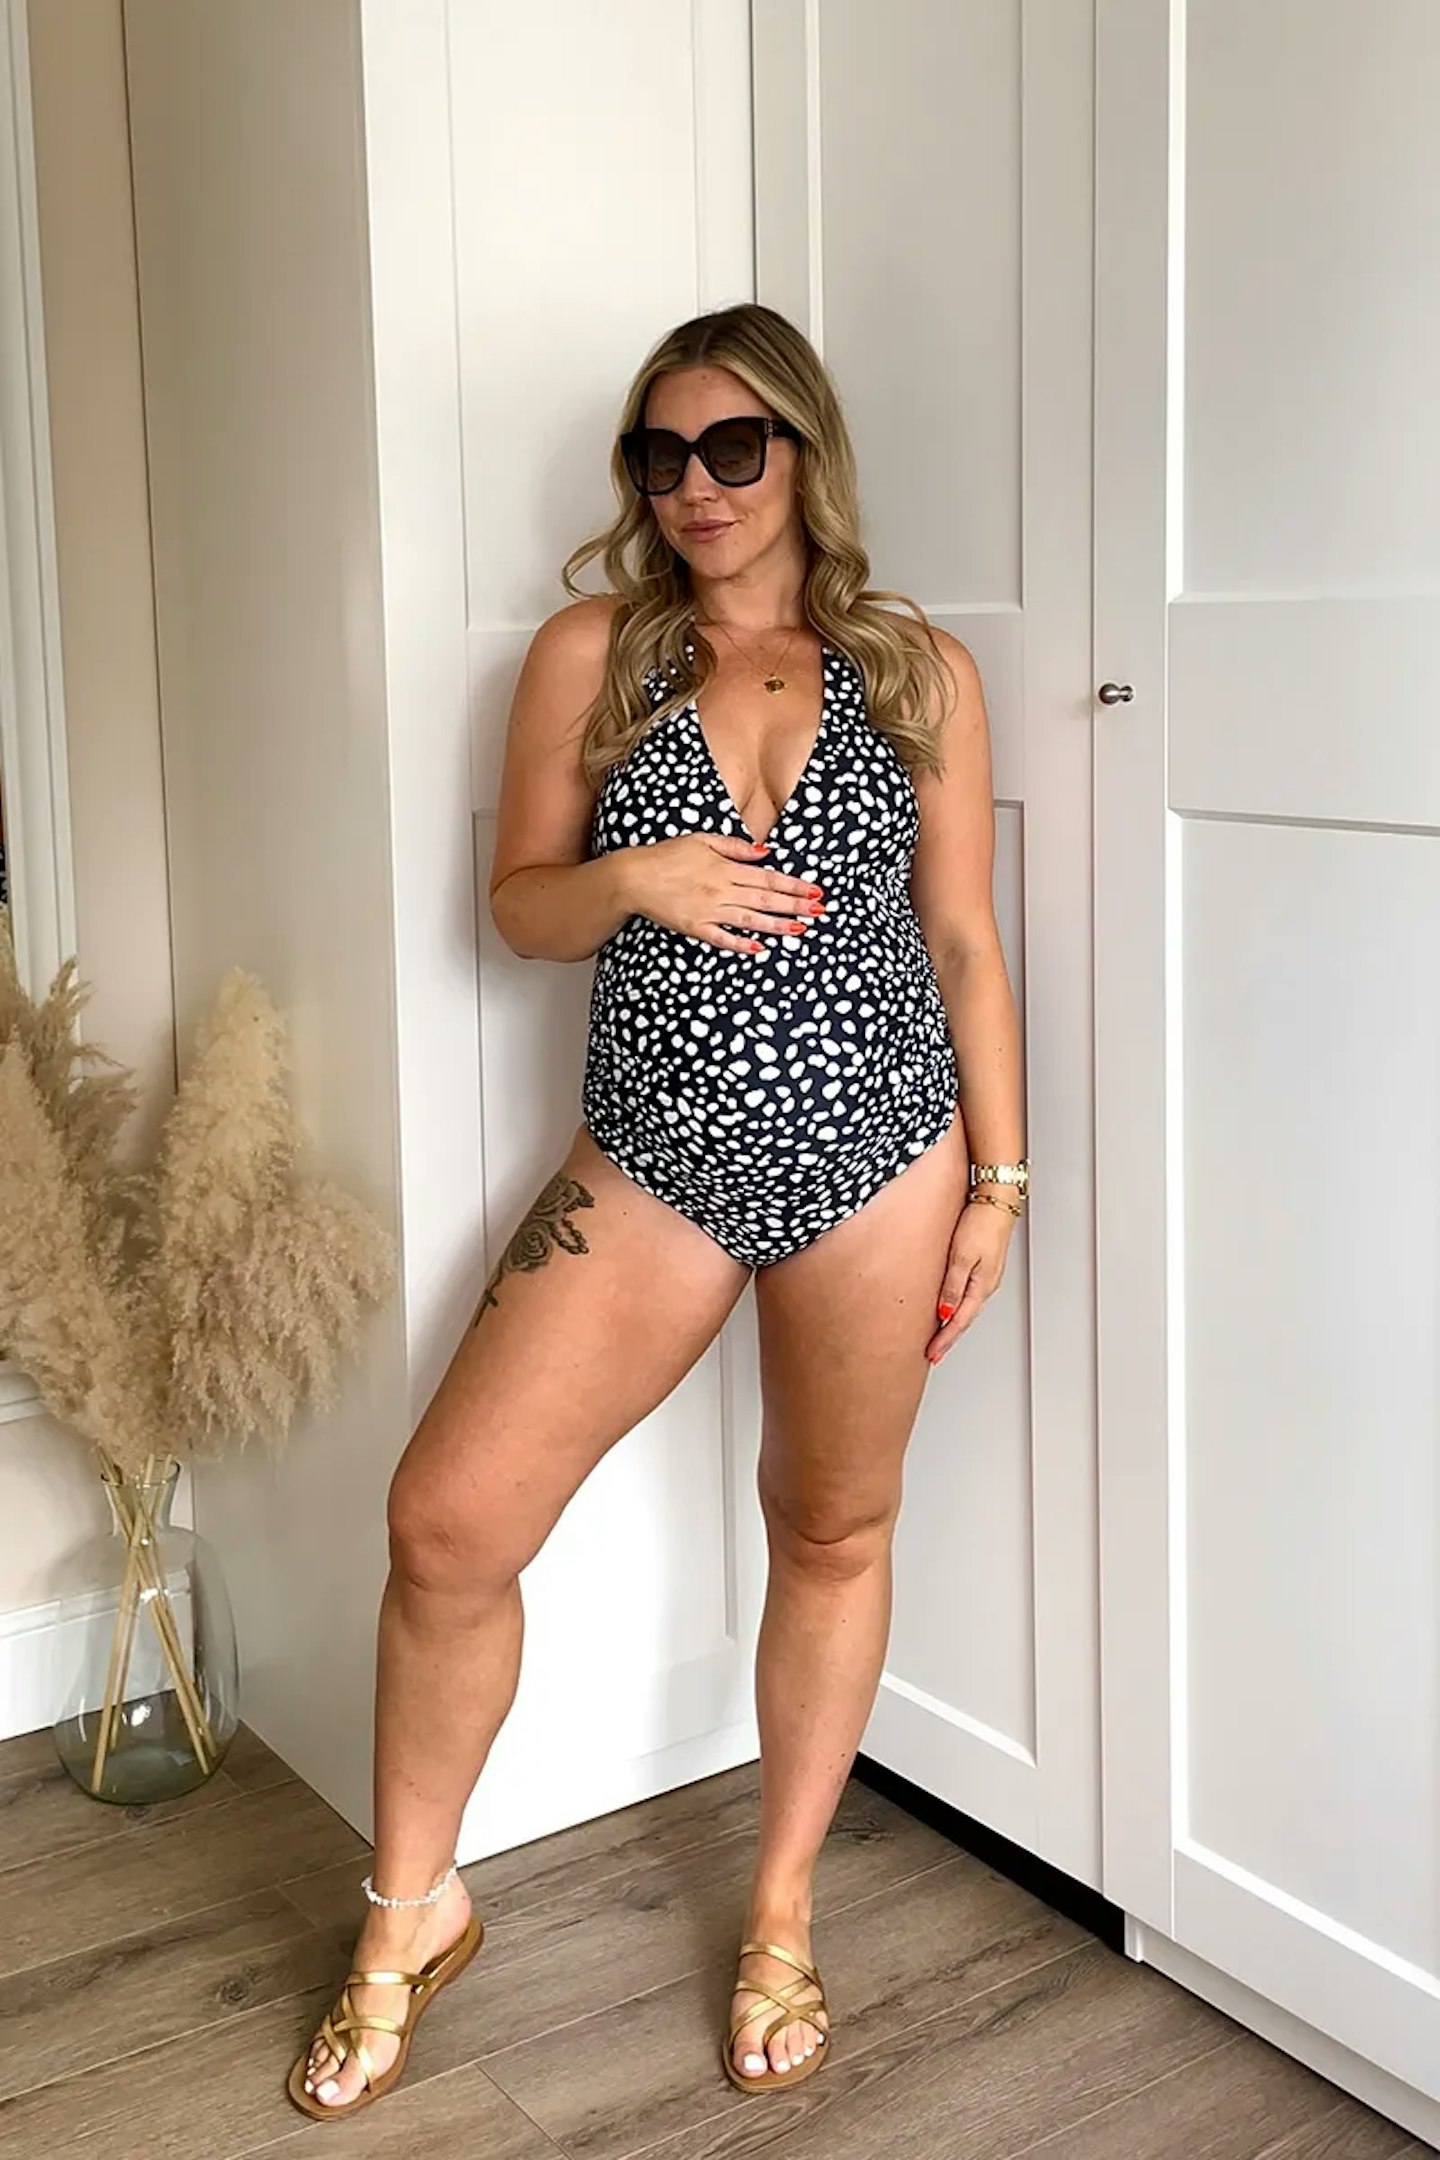 Swimwear For Pregnant Women Premama Striped One Piece Pregnancy